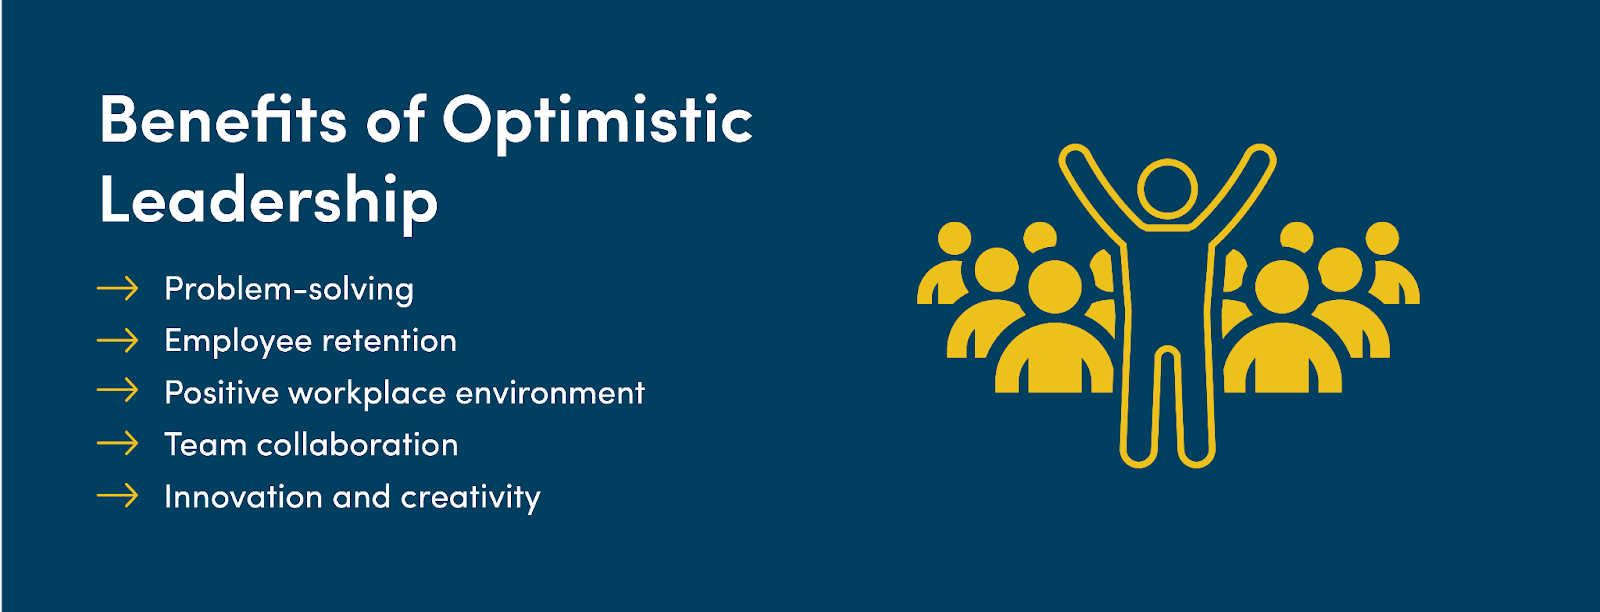 Benefits of optimistic leadership